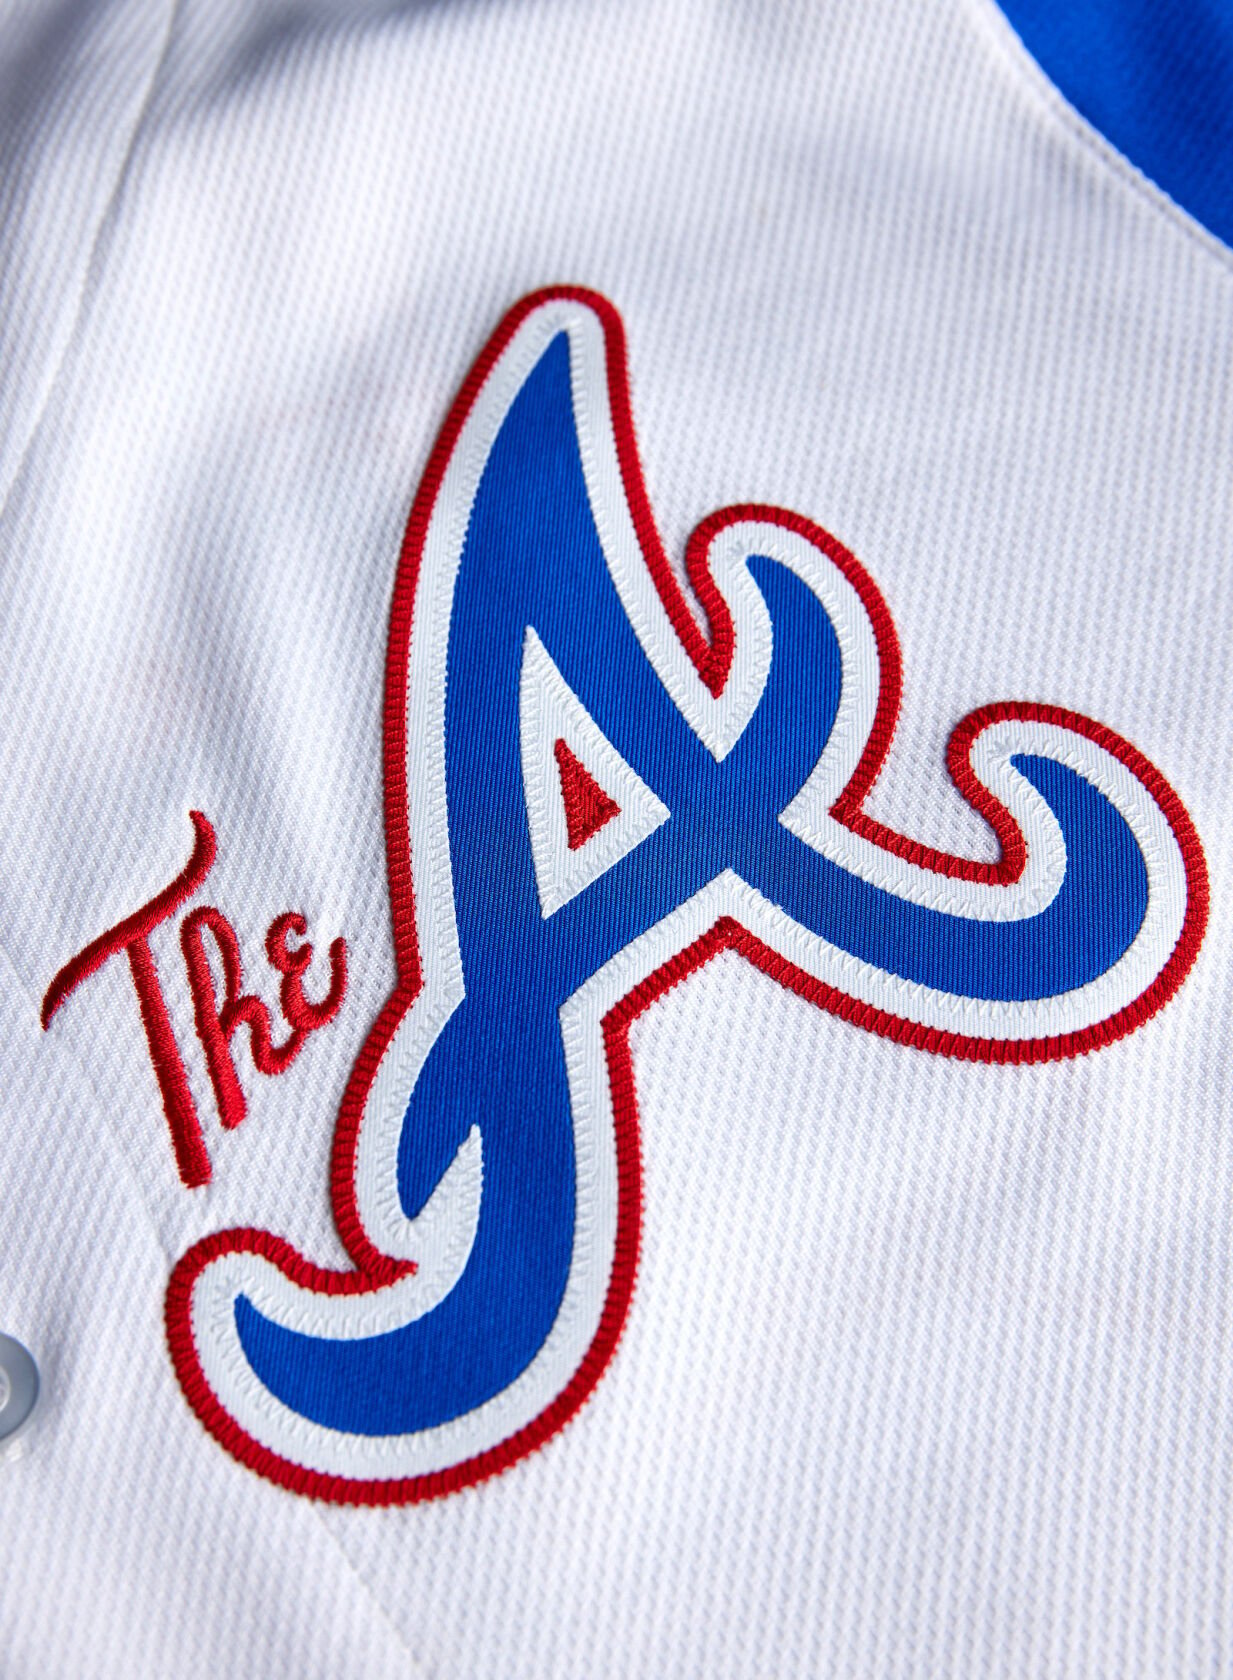 Atlanta Braves City Connect jerseys, including Hank Aaron's No. 44